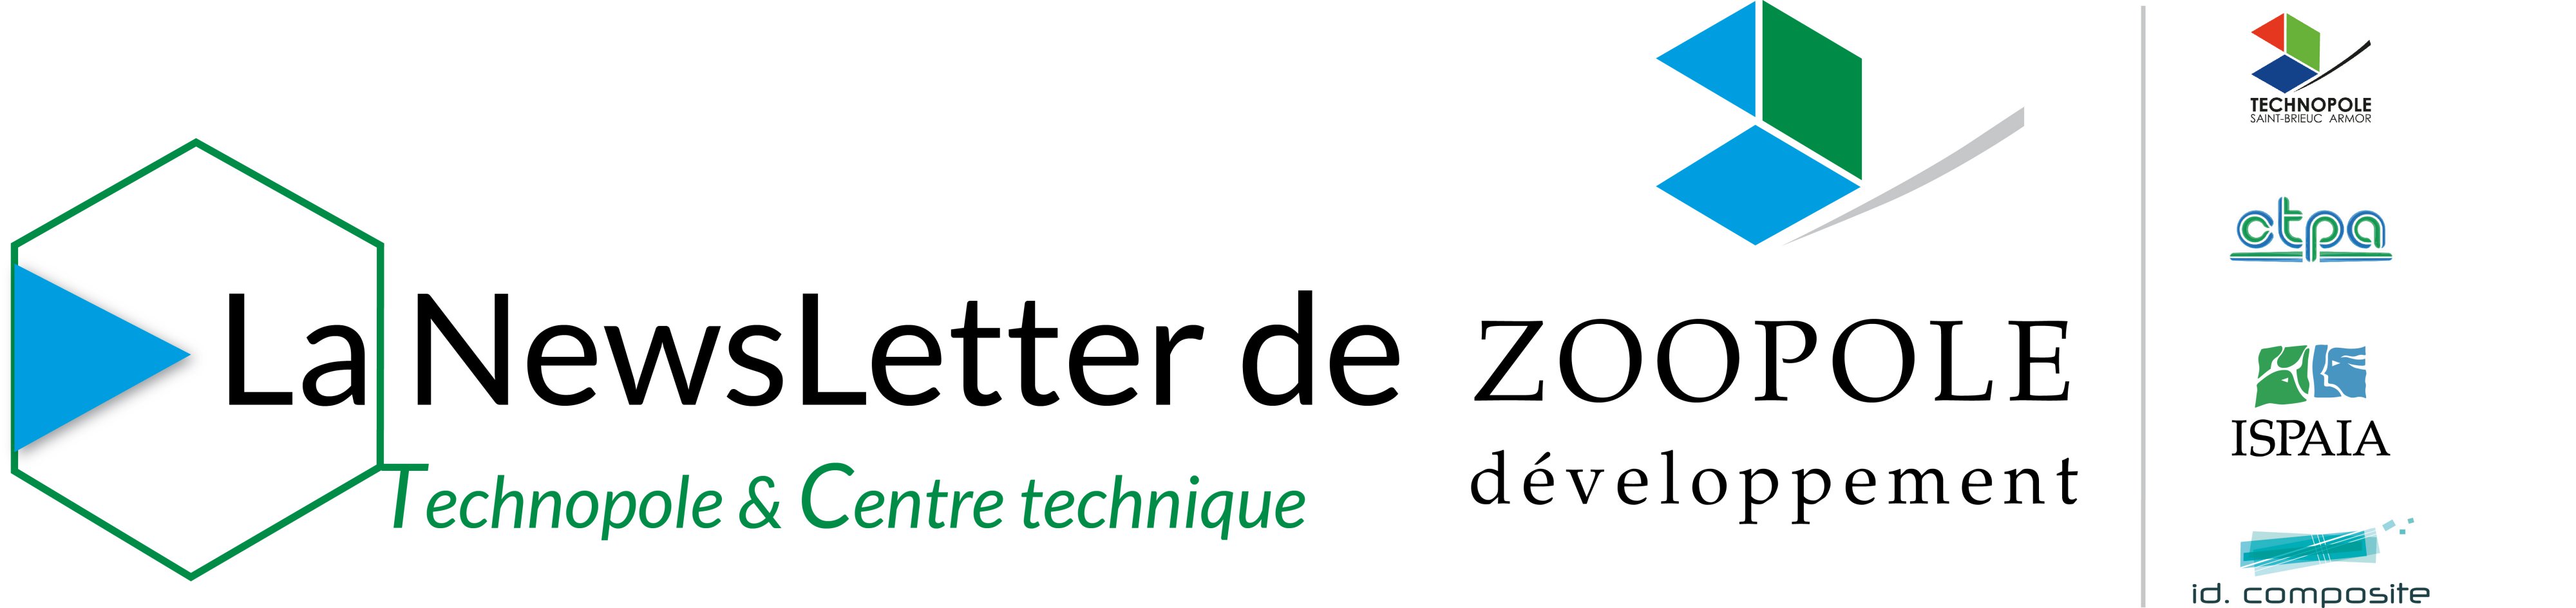 La Newsletter de ZOOPOLE développement